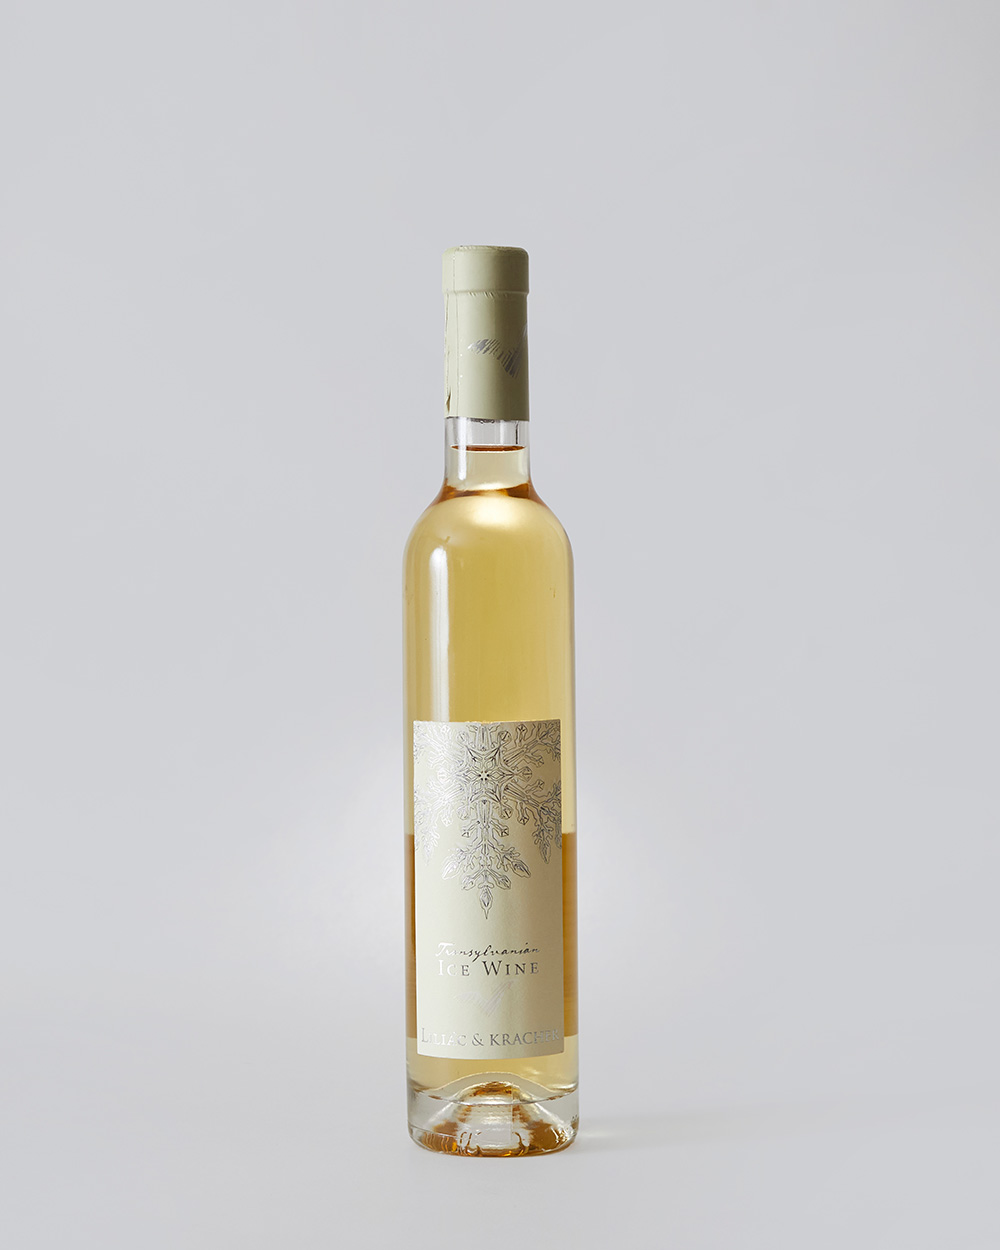 Transylvanian Ice Wine Liliac & Kracher